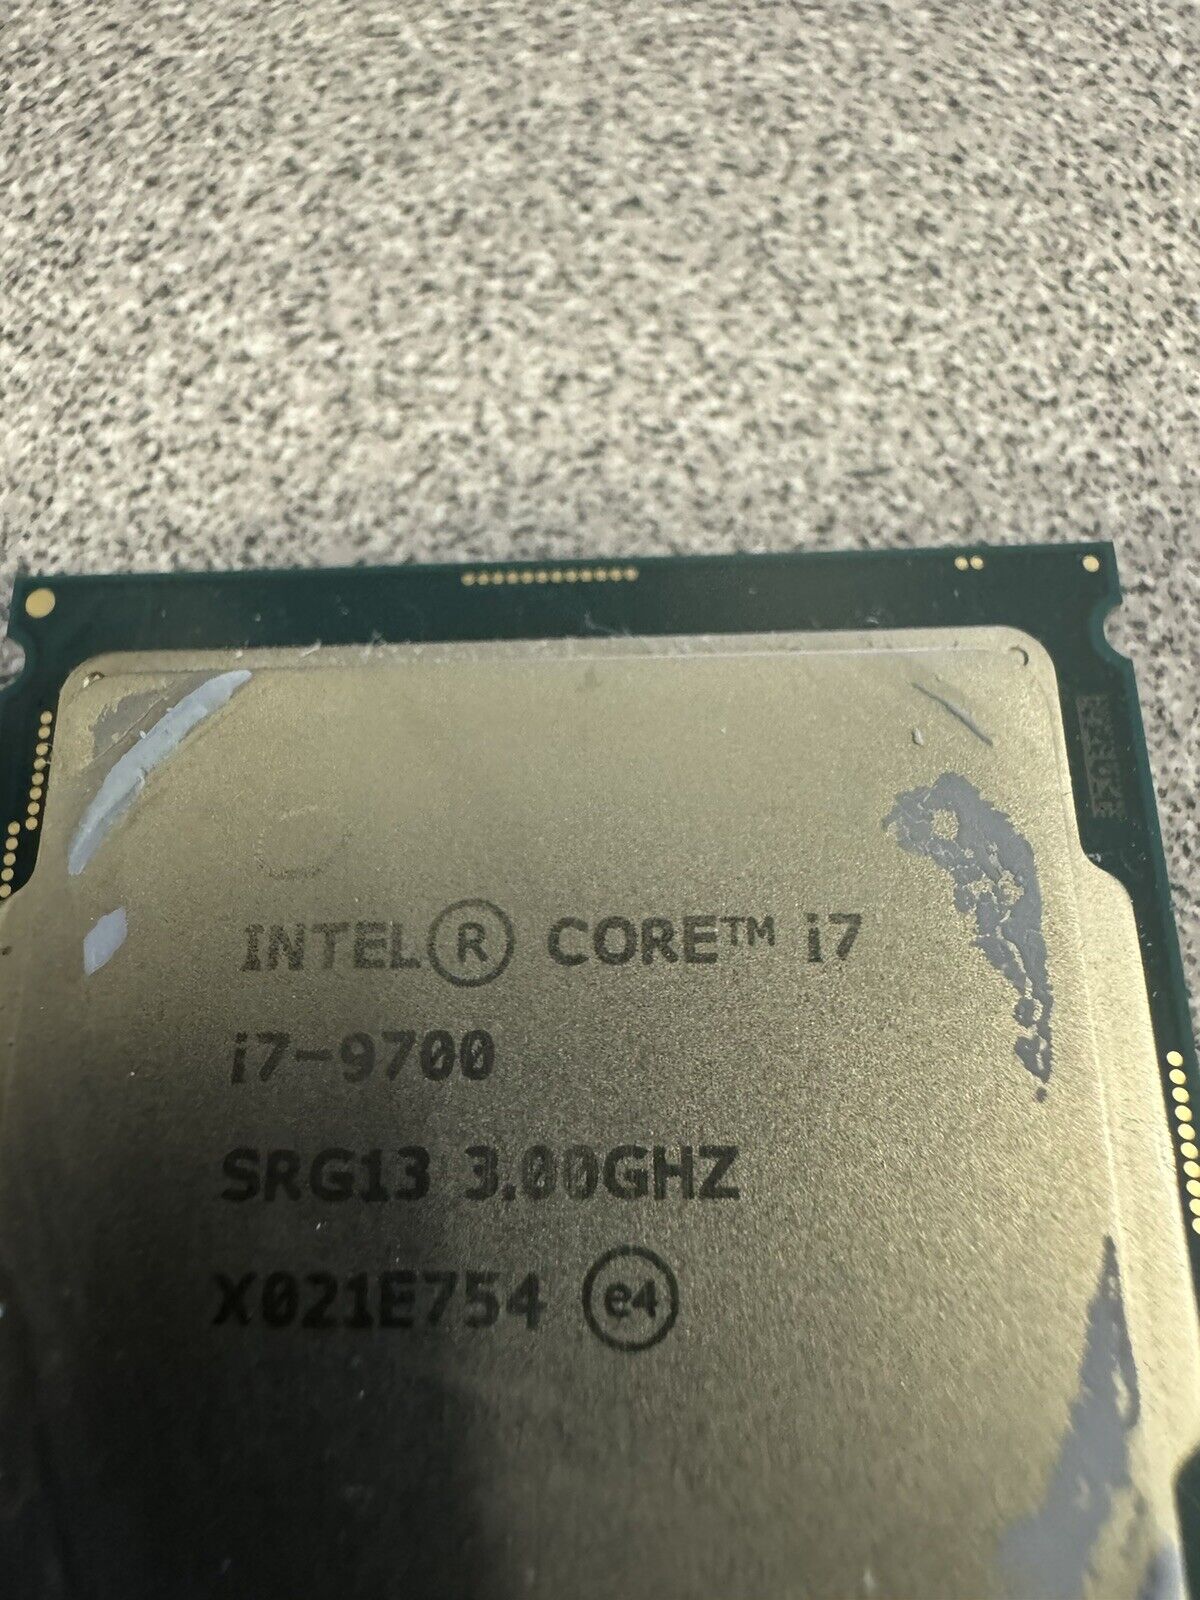 Intel - Core i7-9700 Octa-Core 3 GHz Desktop Processor LGA 1151 #95